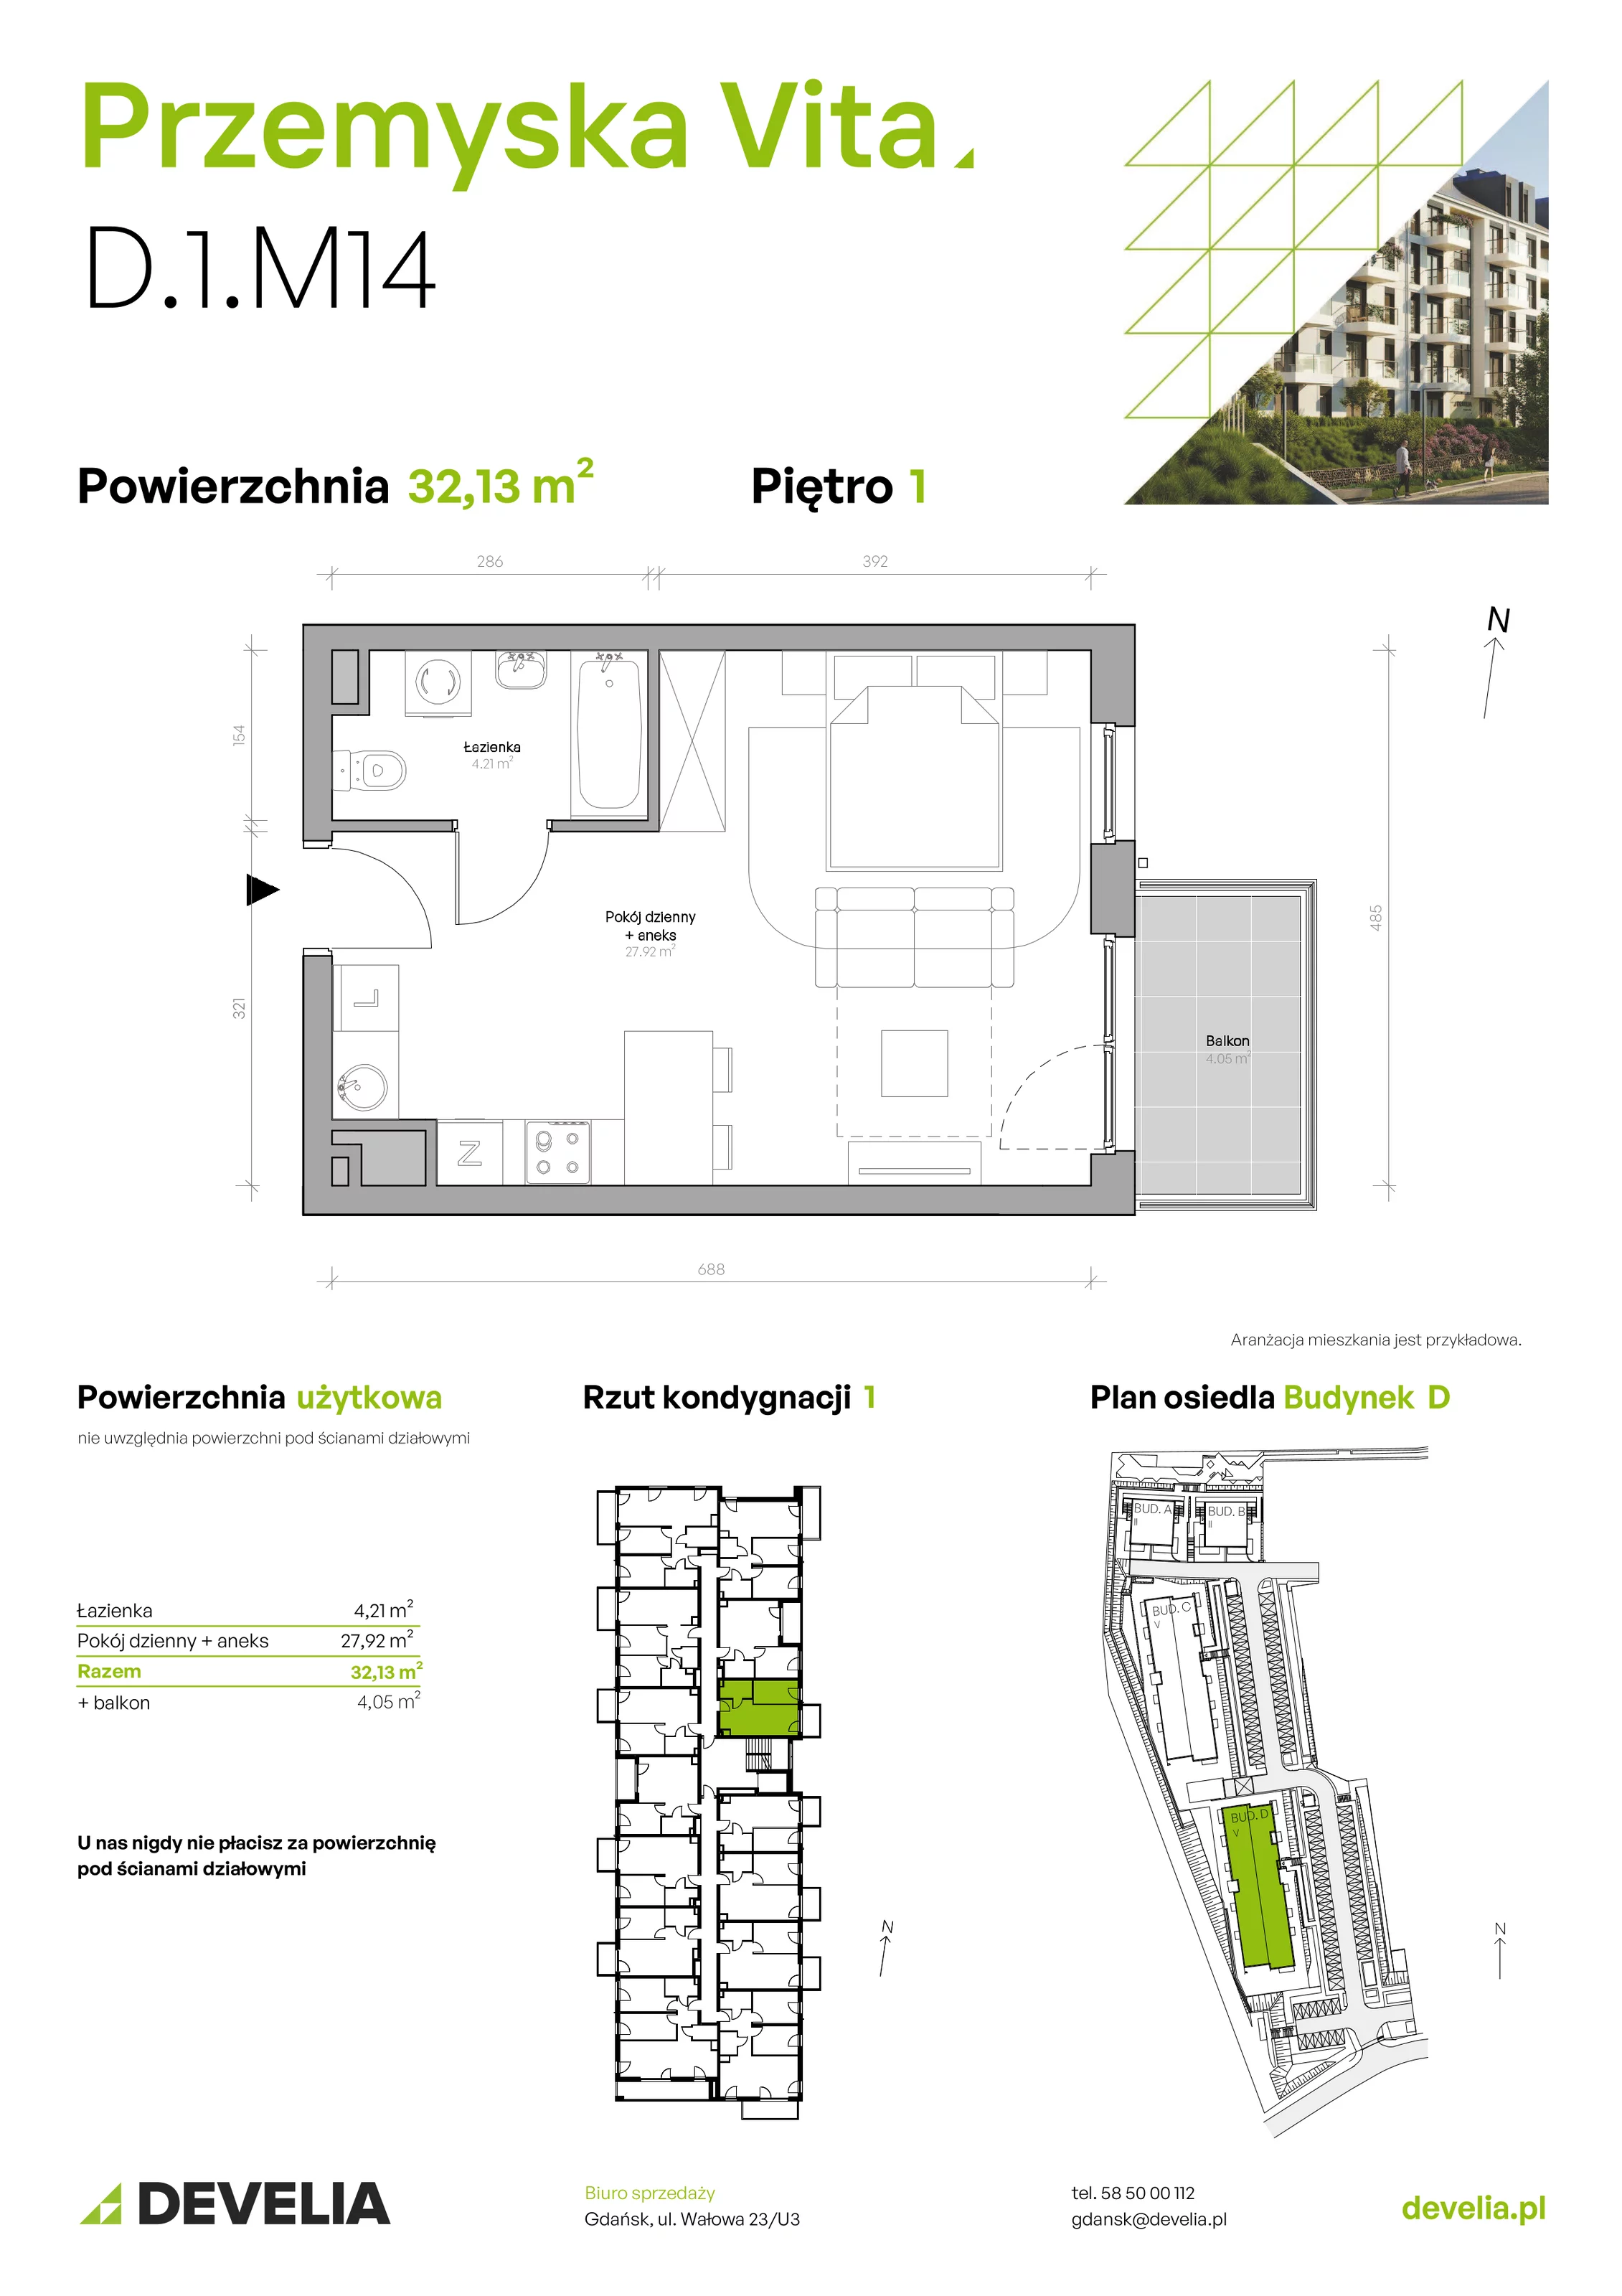 Mieszkanie 32,13 m², piętro 1, oferta nr D.1.M14, Przemyska Vita, Gdańsk, Ujeścisko-Łostowice, Ujeścisko, ul. Przemyska 37